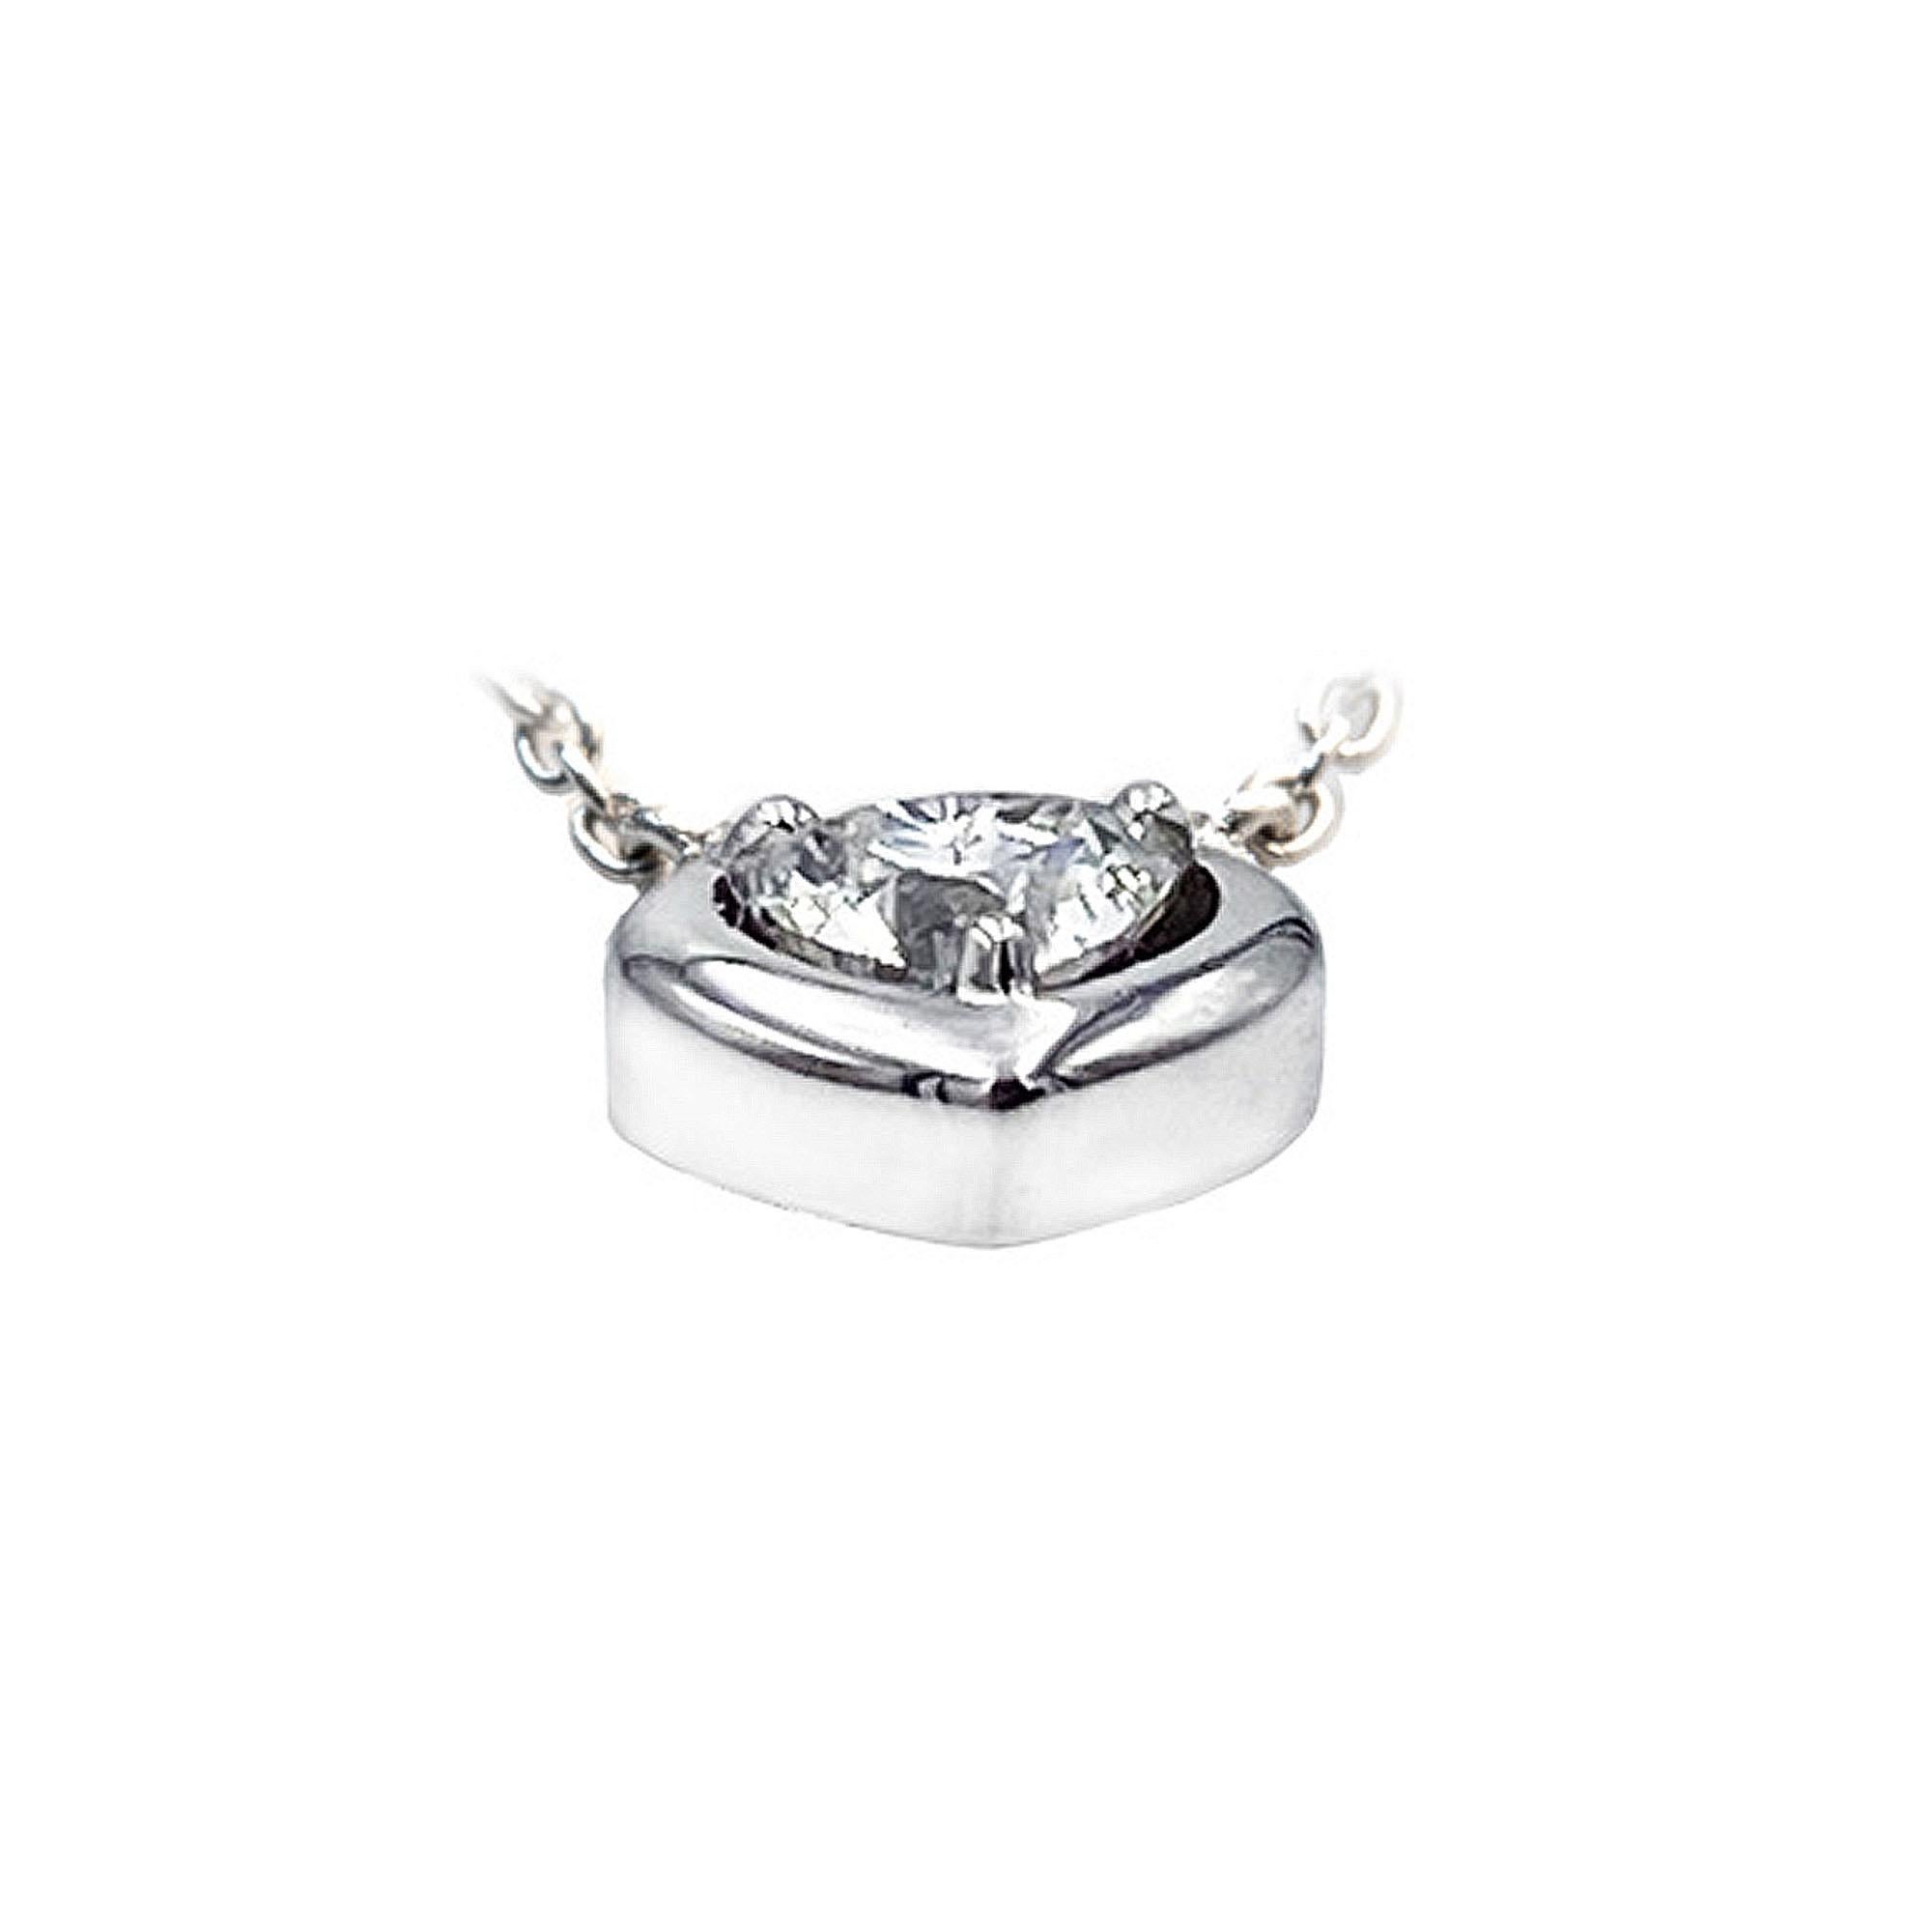 Ce pendentif enchanteur est orné d'un éblouissant diamant en forme de cœur de 0,30 carat, réputé pour son symbolisme romantique et son élégance intemporelle. Doté d'un grade de couleur E-F, le diamant présente des tons presque incolores, ce qui